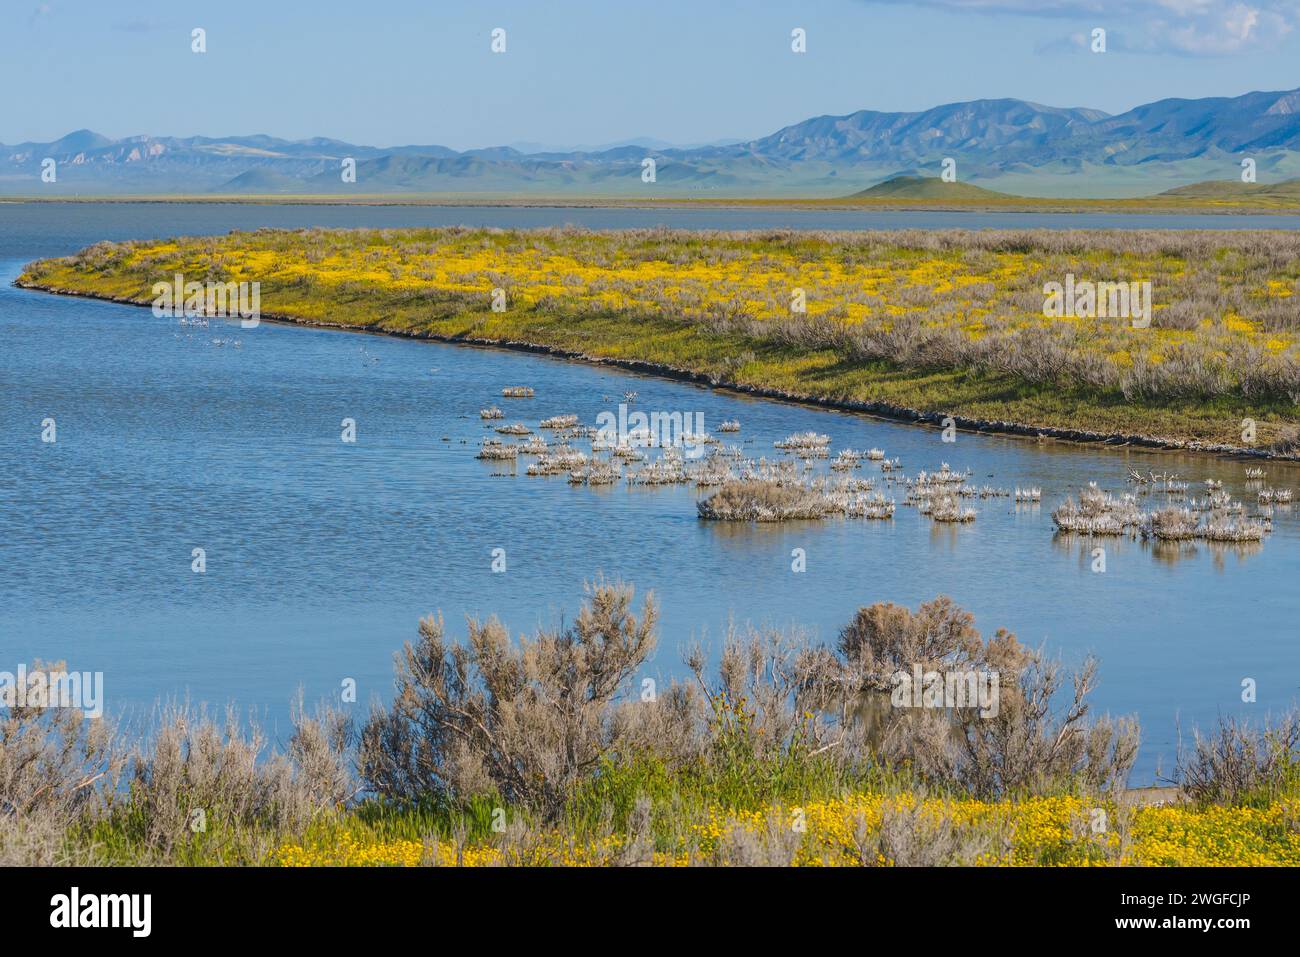 Im Carrizo Plain Ntional Monument im Zentrum Kaliforniens blühen der Soda Lake voller Wasser und Wildblumen Stockfoto